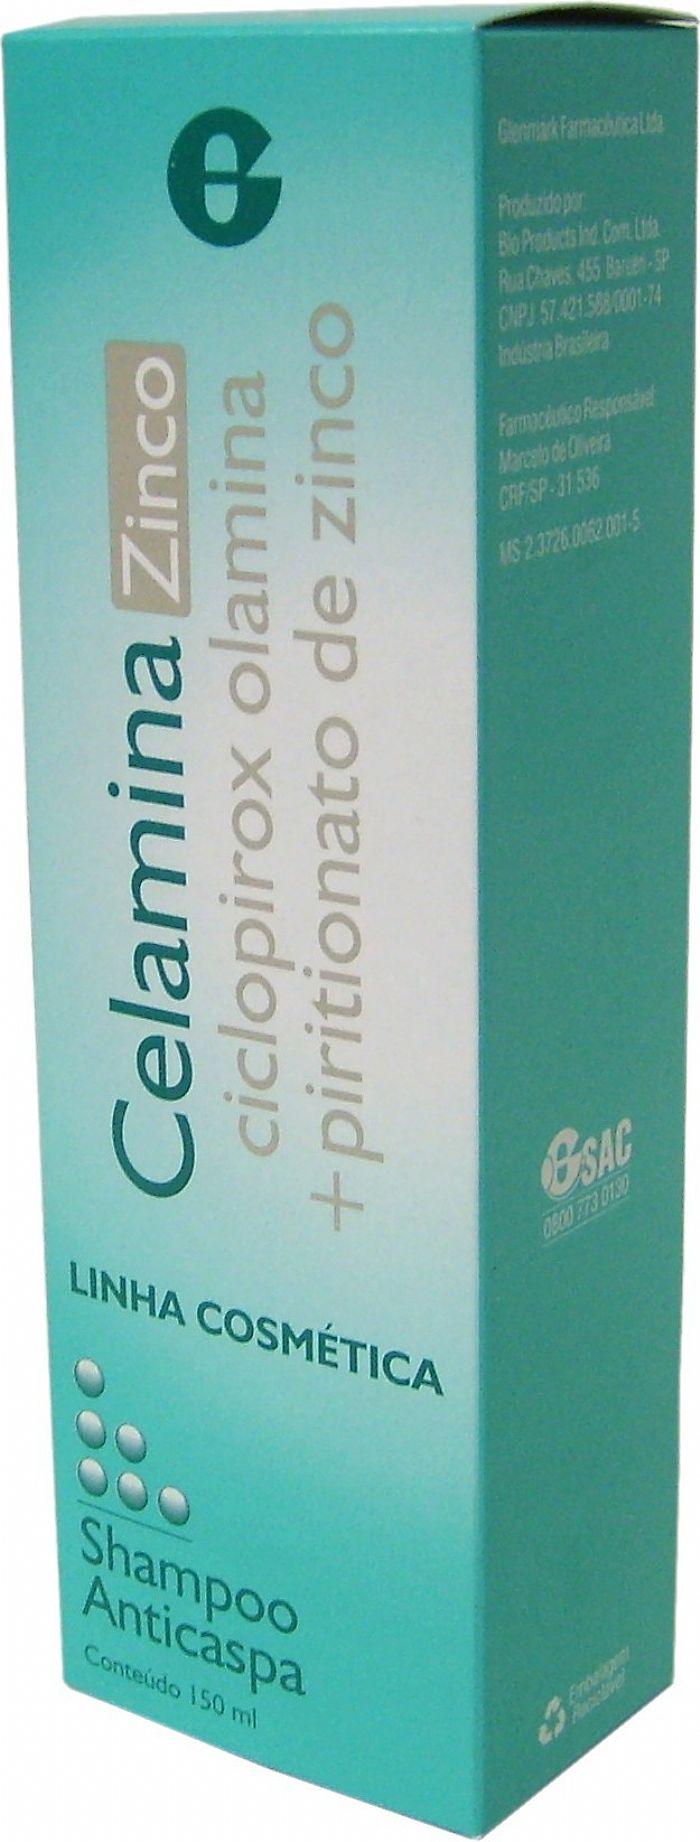 shampoo-celamina-zinco-com-150ml-principal